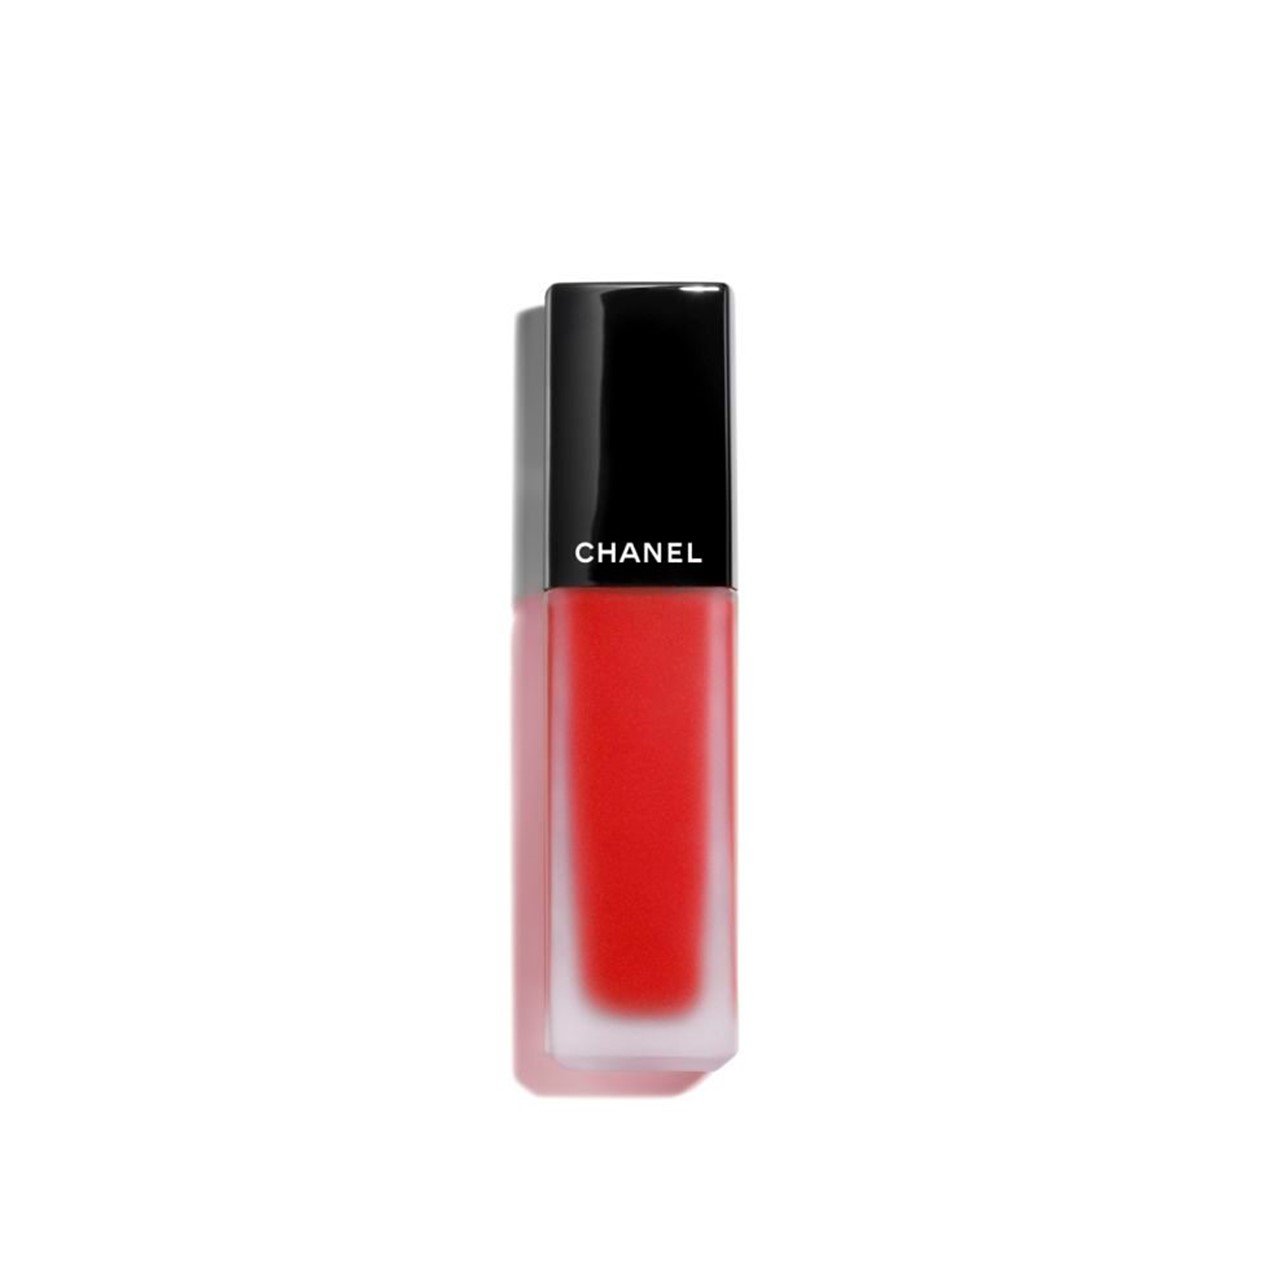 CHANEL Rouge Allure Ink Matte Liquid Lip Colour 222 6ml (0.20fl oz)